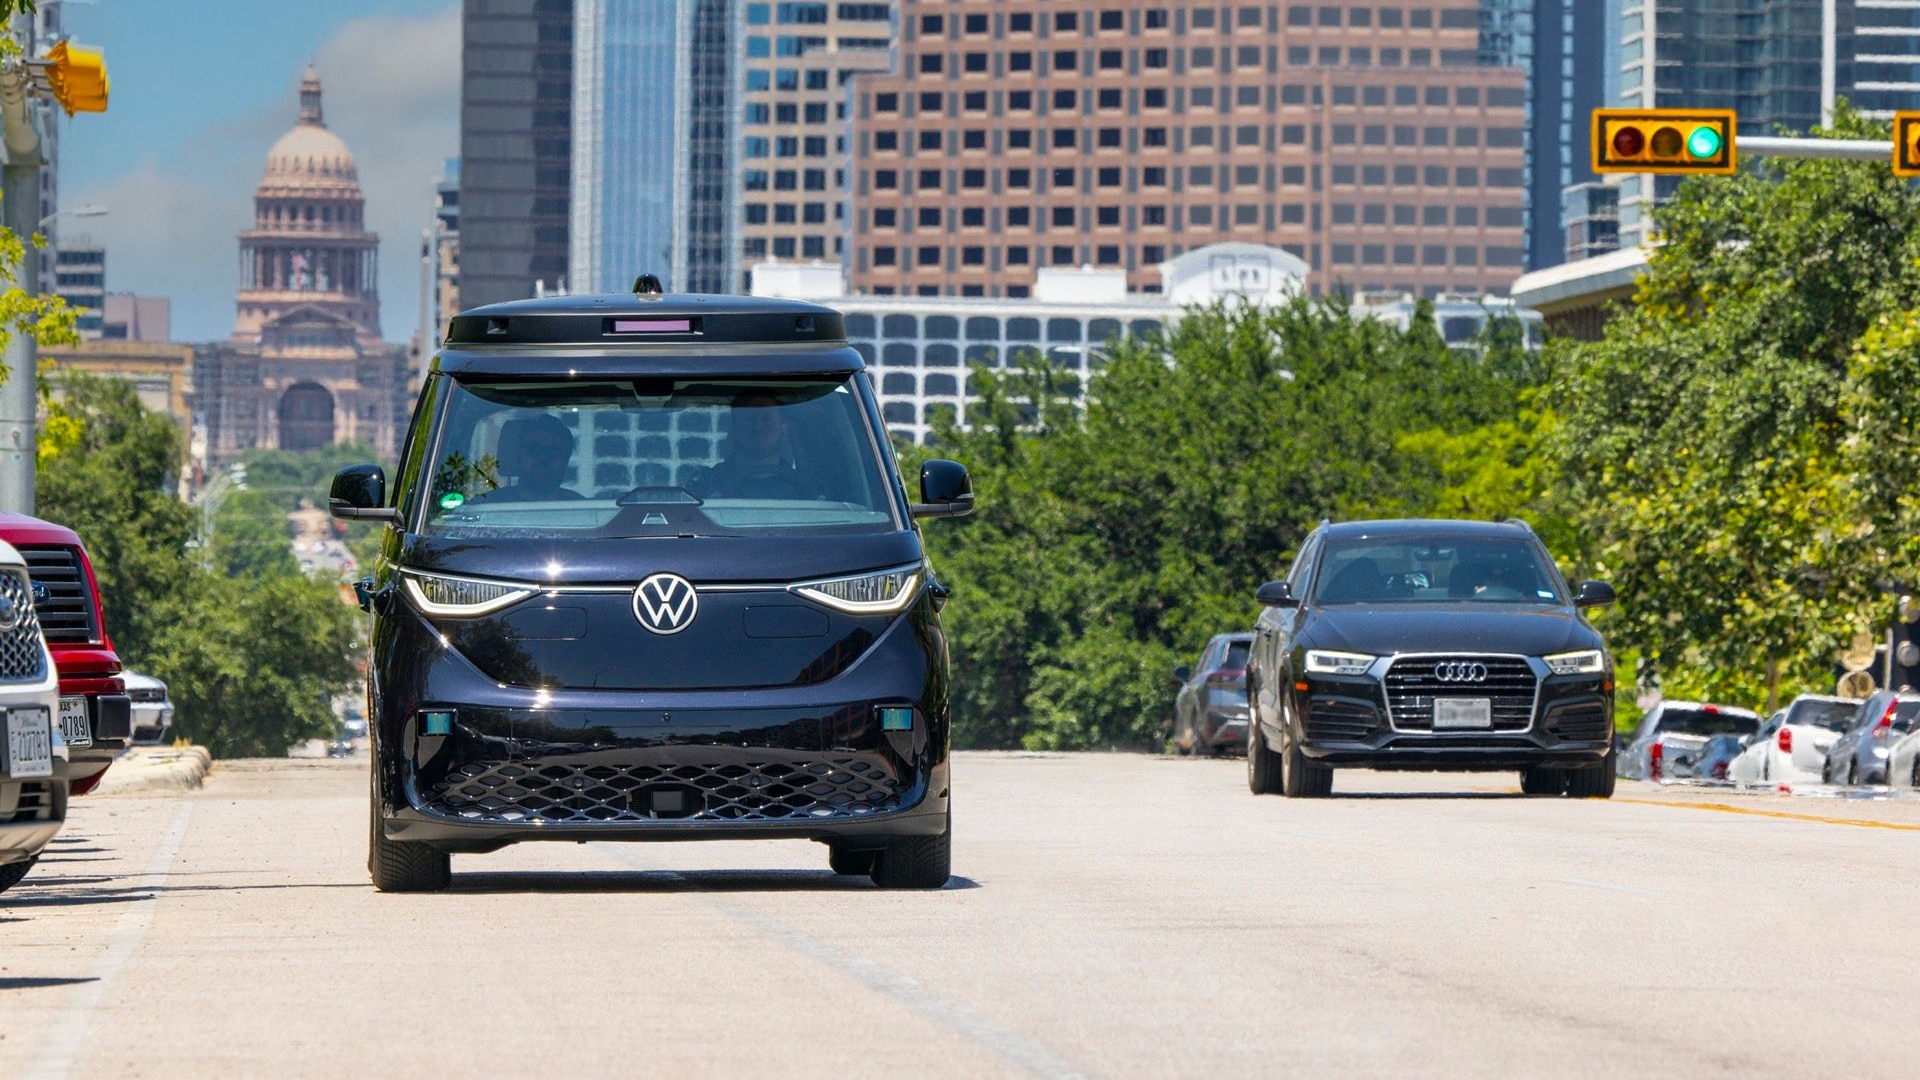 VW ID.Buzz autonomous test vehicle in Austin